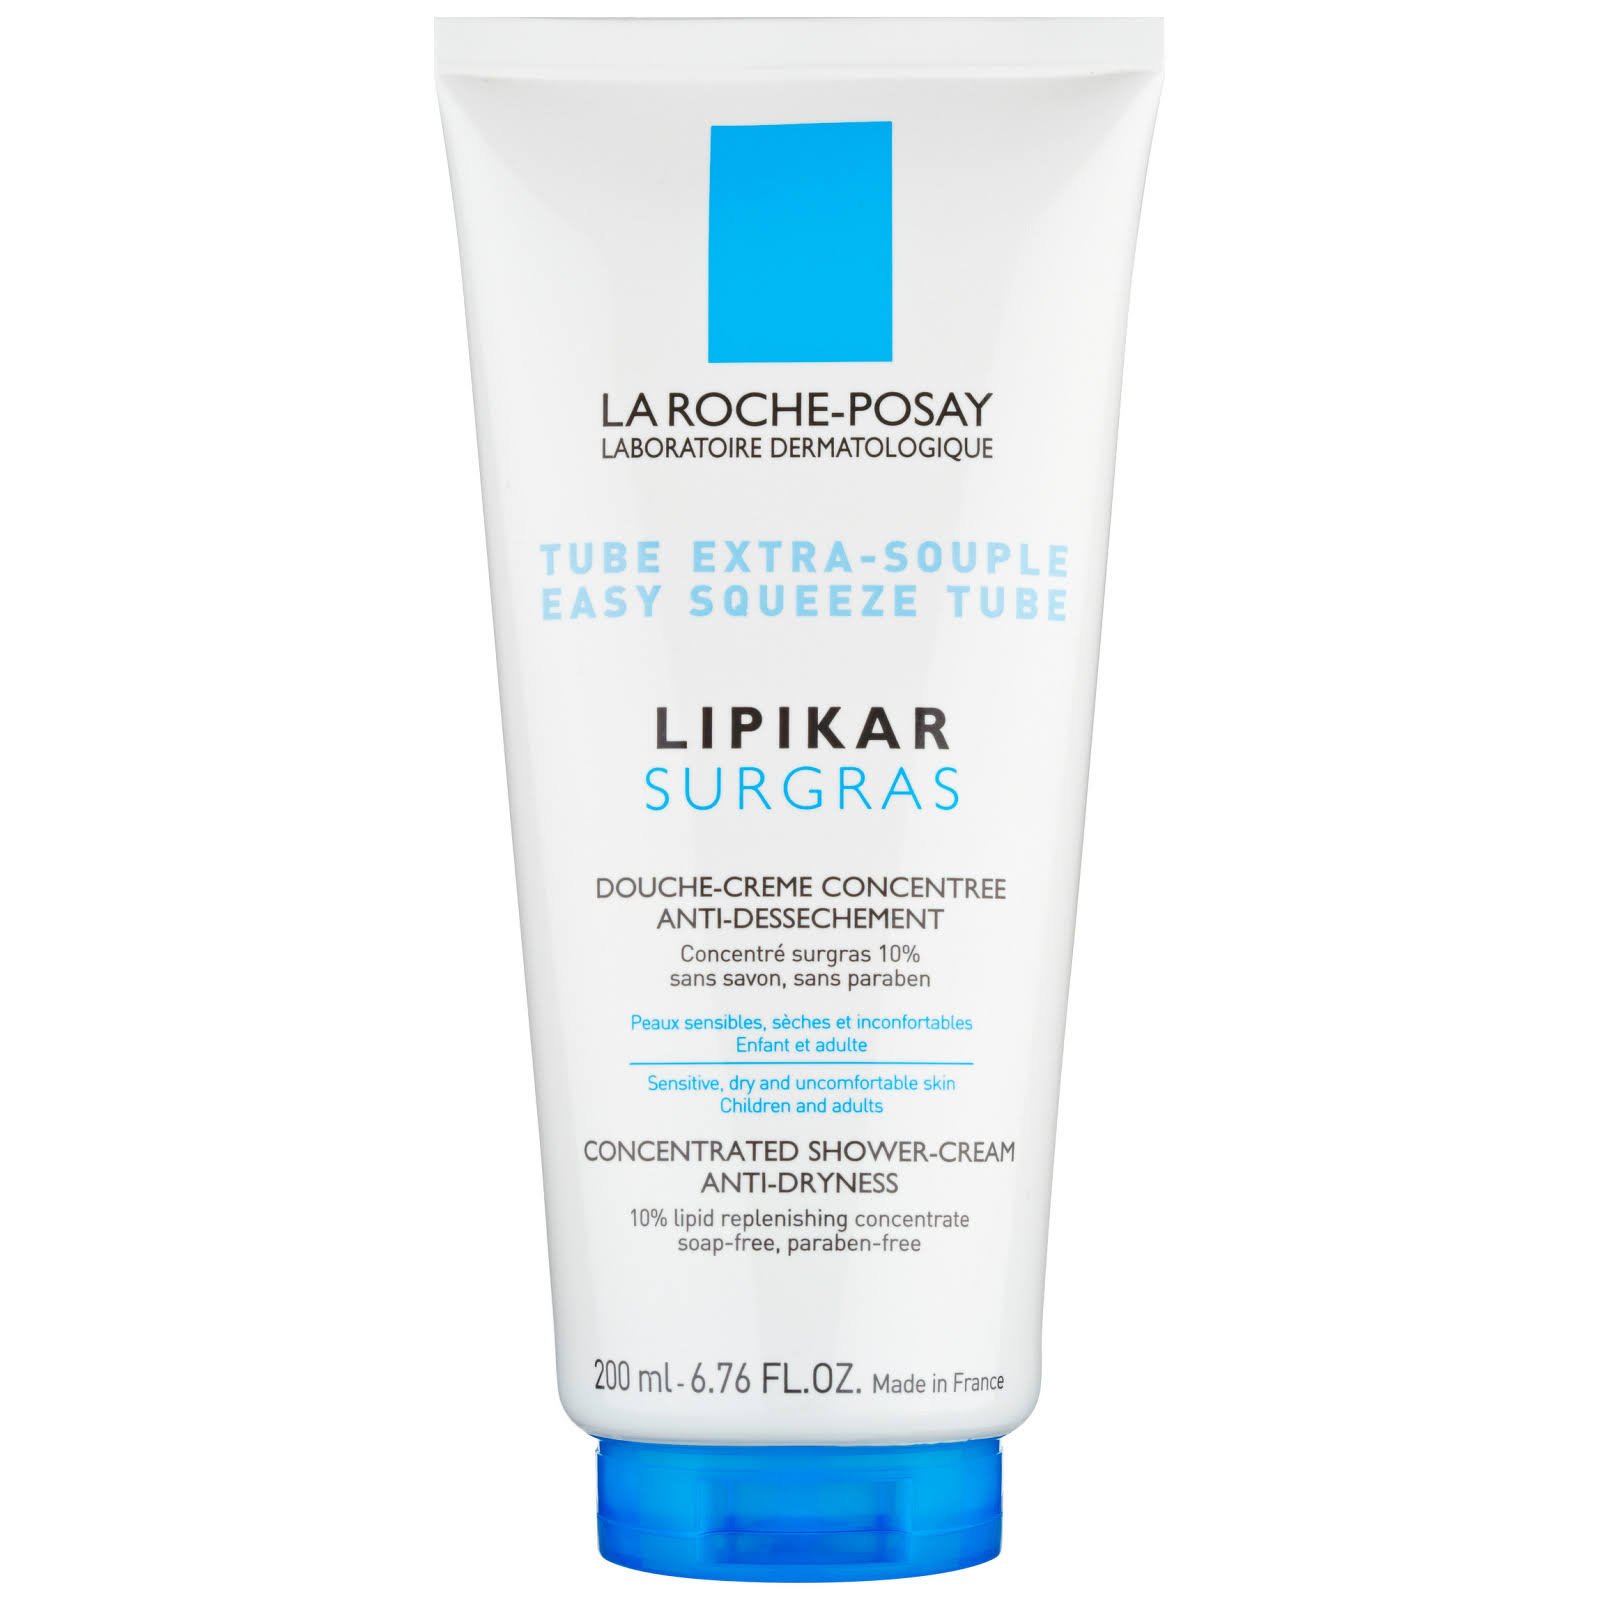 La Roche-Posay Lipikar Surgras Concentrated Shower-Cream - Dry Skin, 200ml